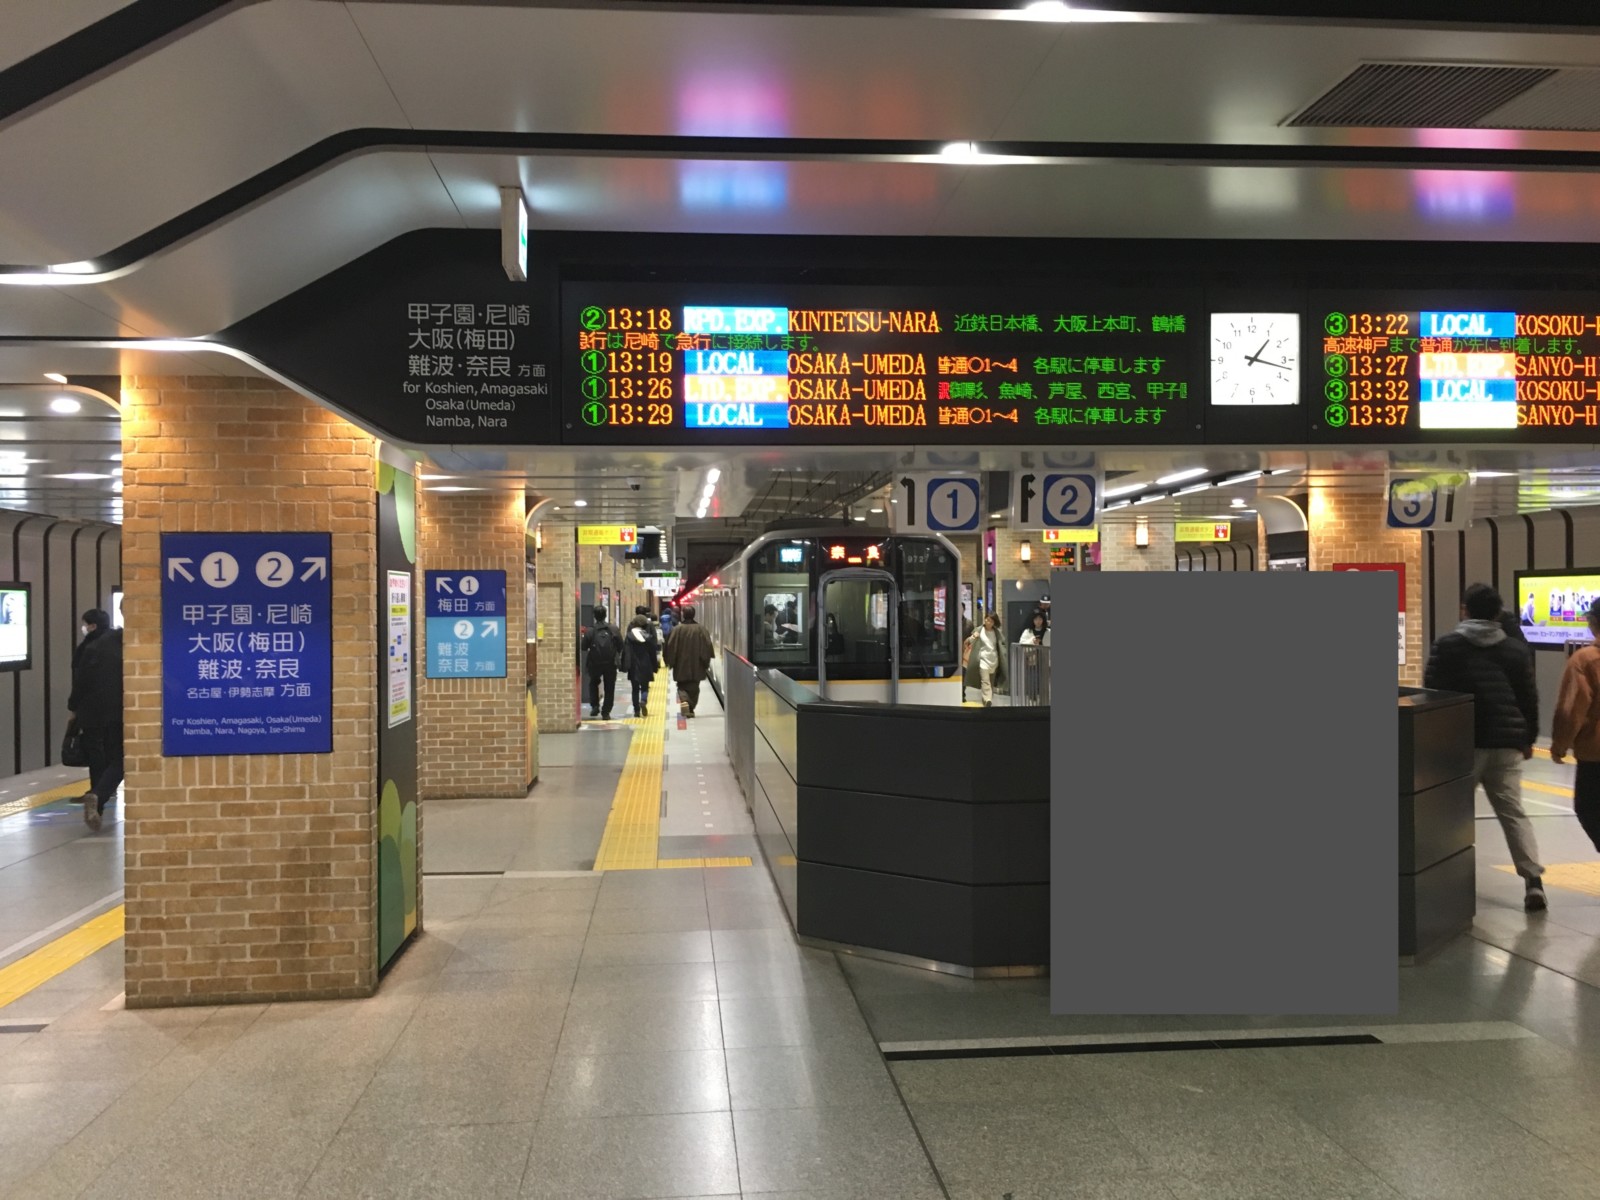 快速急行 大阪 神戸 奈良を結ぶ 近鉄奈良線 阪神なんば線 とは 便利な使い方を解説 運賃 所要時間など 奈良まちあるき風景紀行